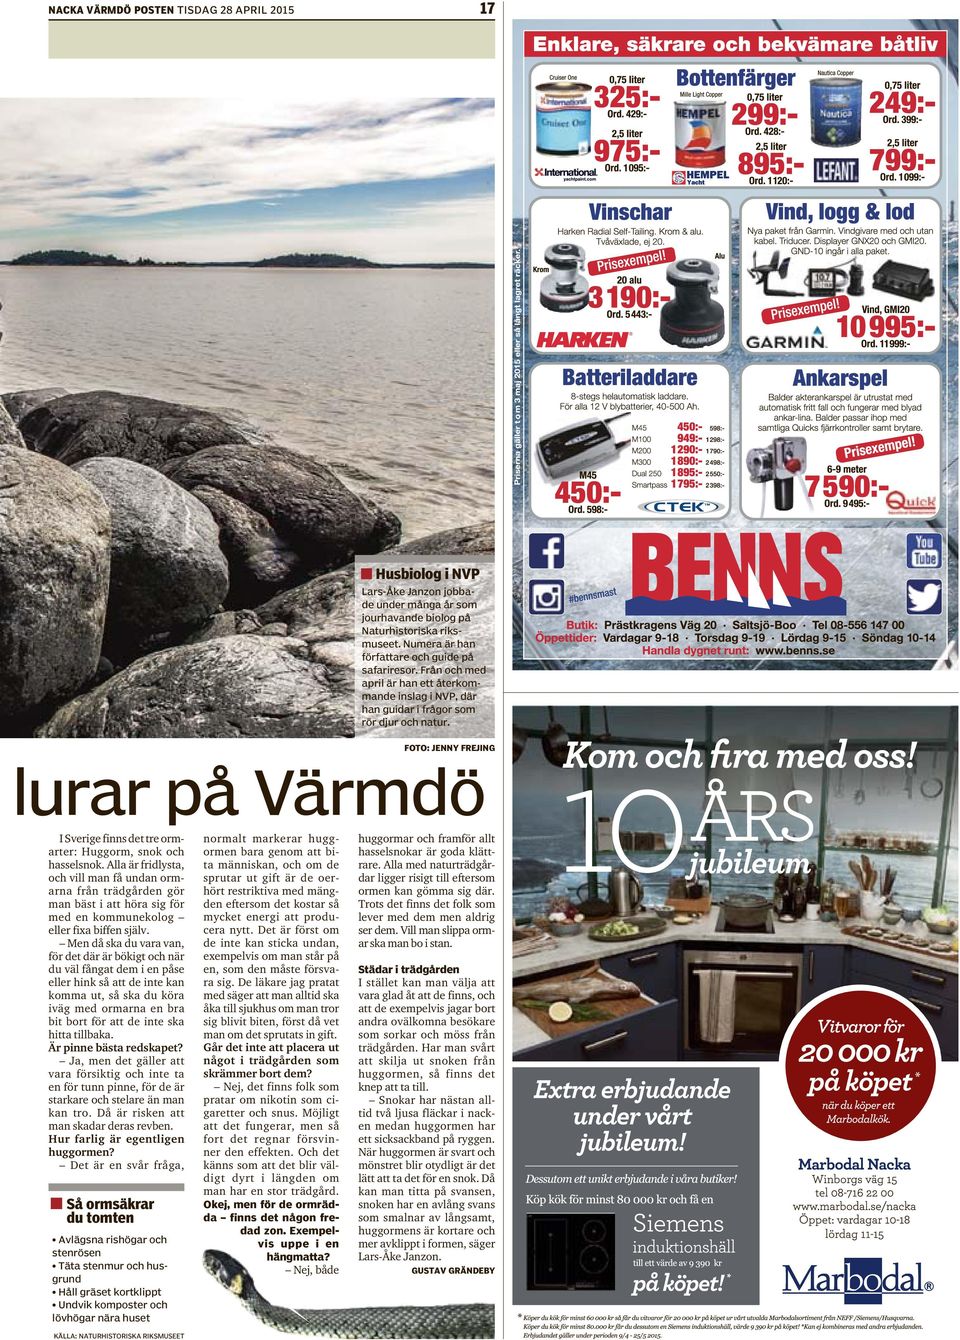 FOTO: JENNY FREJING lurar på Värmdö I Sverige finns det tre ormarter: Huggorm, snok och hasselsnok.